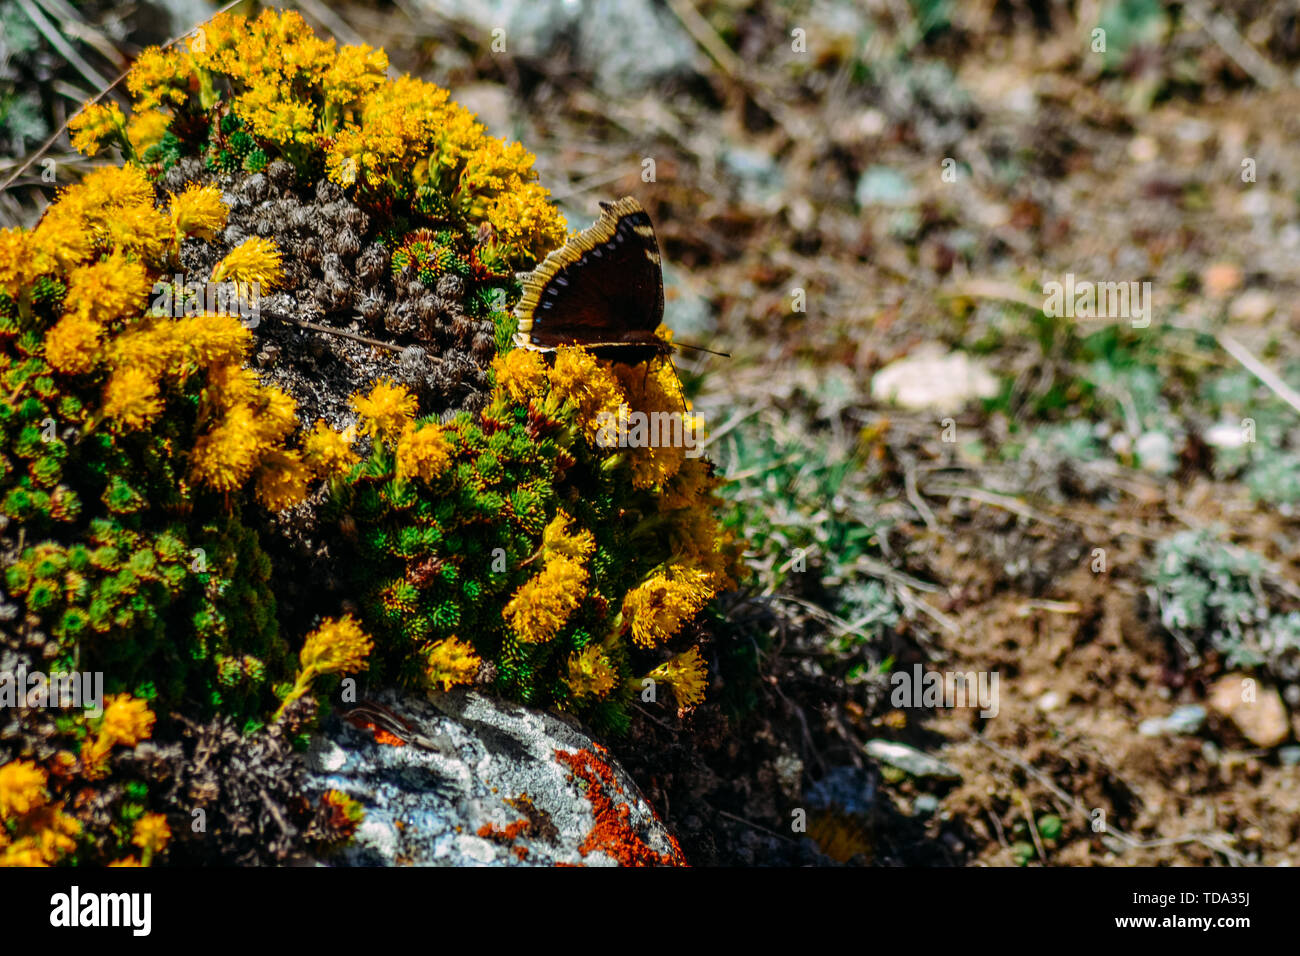 Foto von einem Schmetterling auf Blumen in einer bergigen Gegend auf einem Felsen Stockfoto